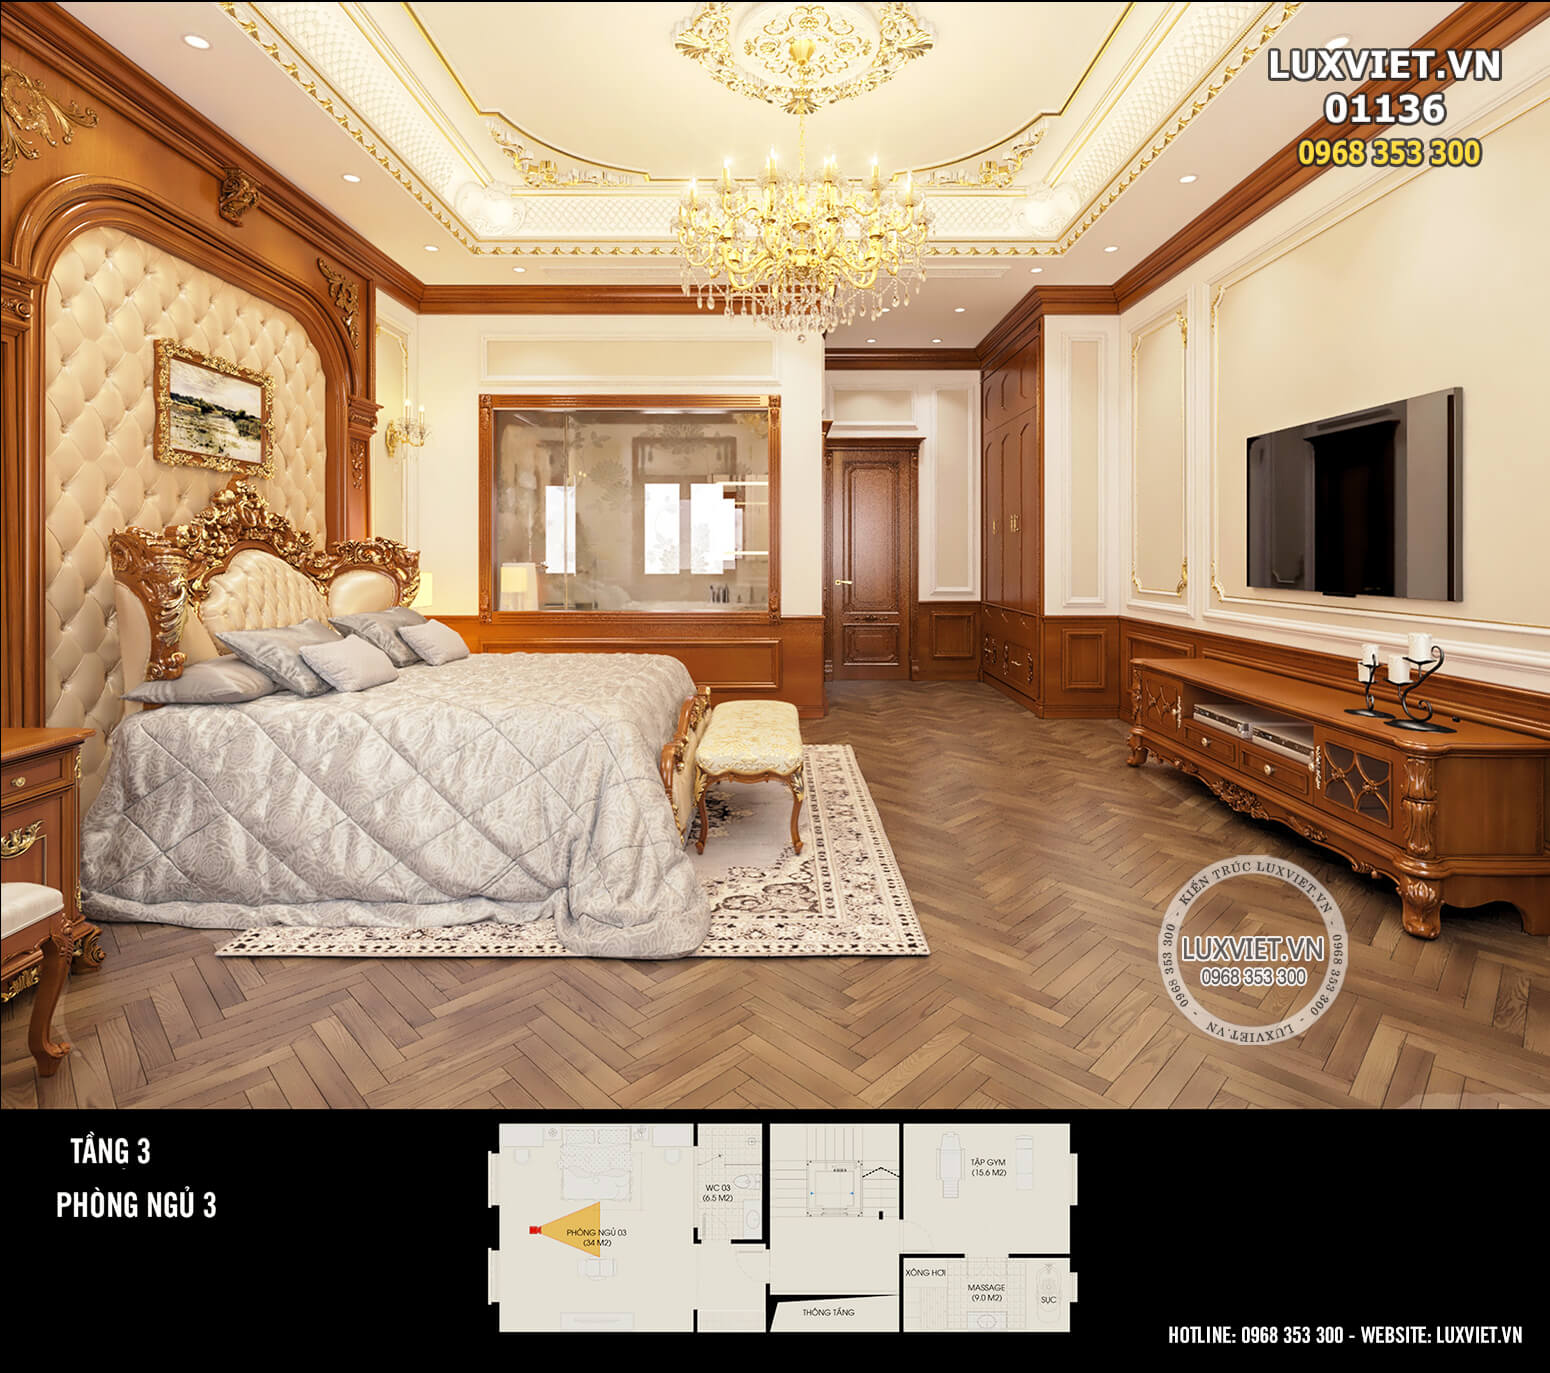 Thiết kế nội thất tân cổ điển đẹp, sang trọng, đẳng cấp - Mã số: Luxviet 01136